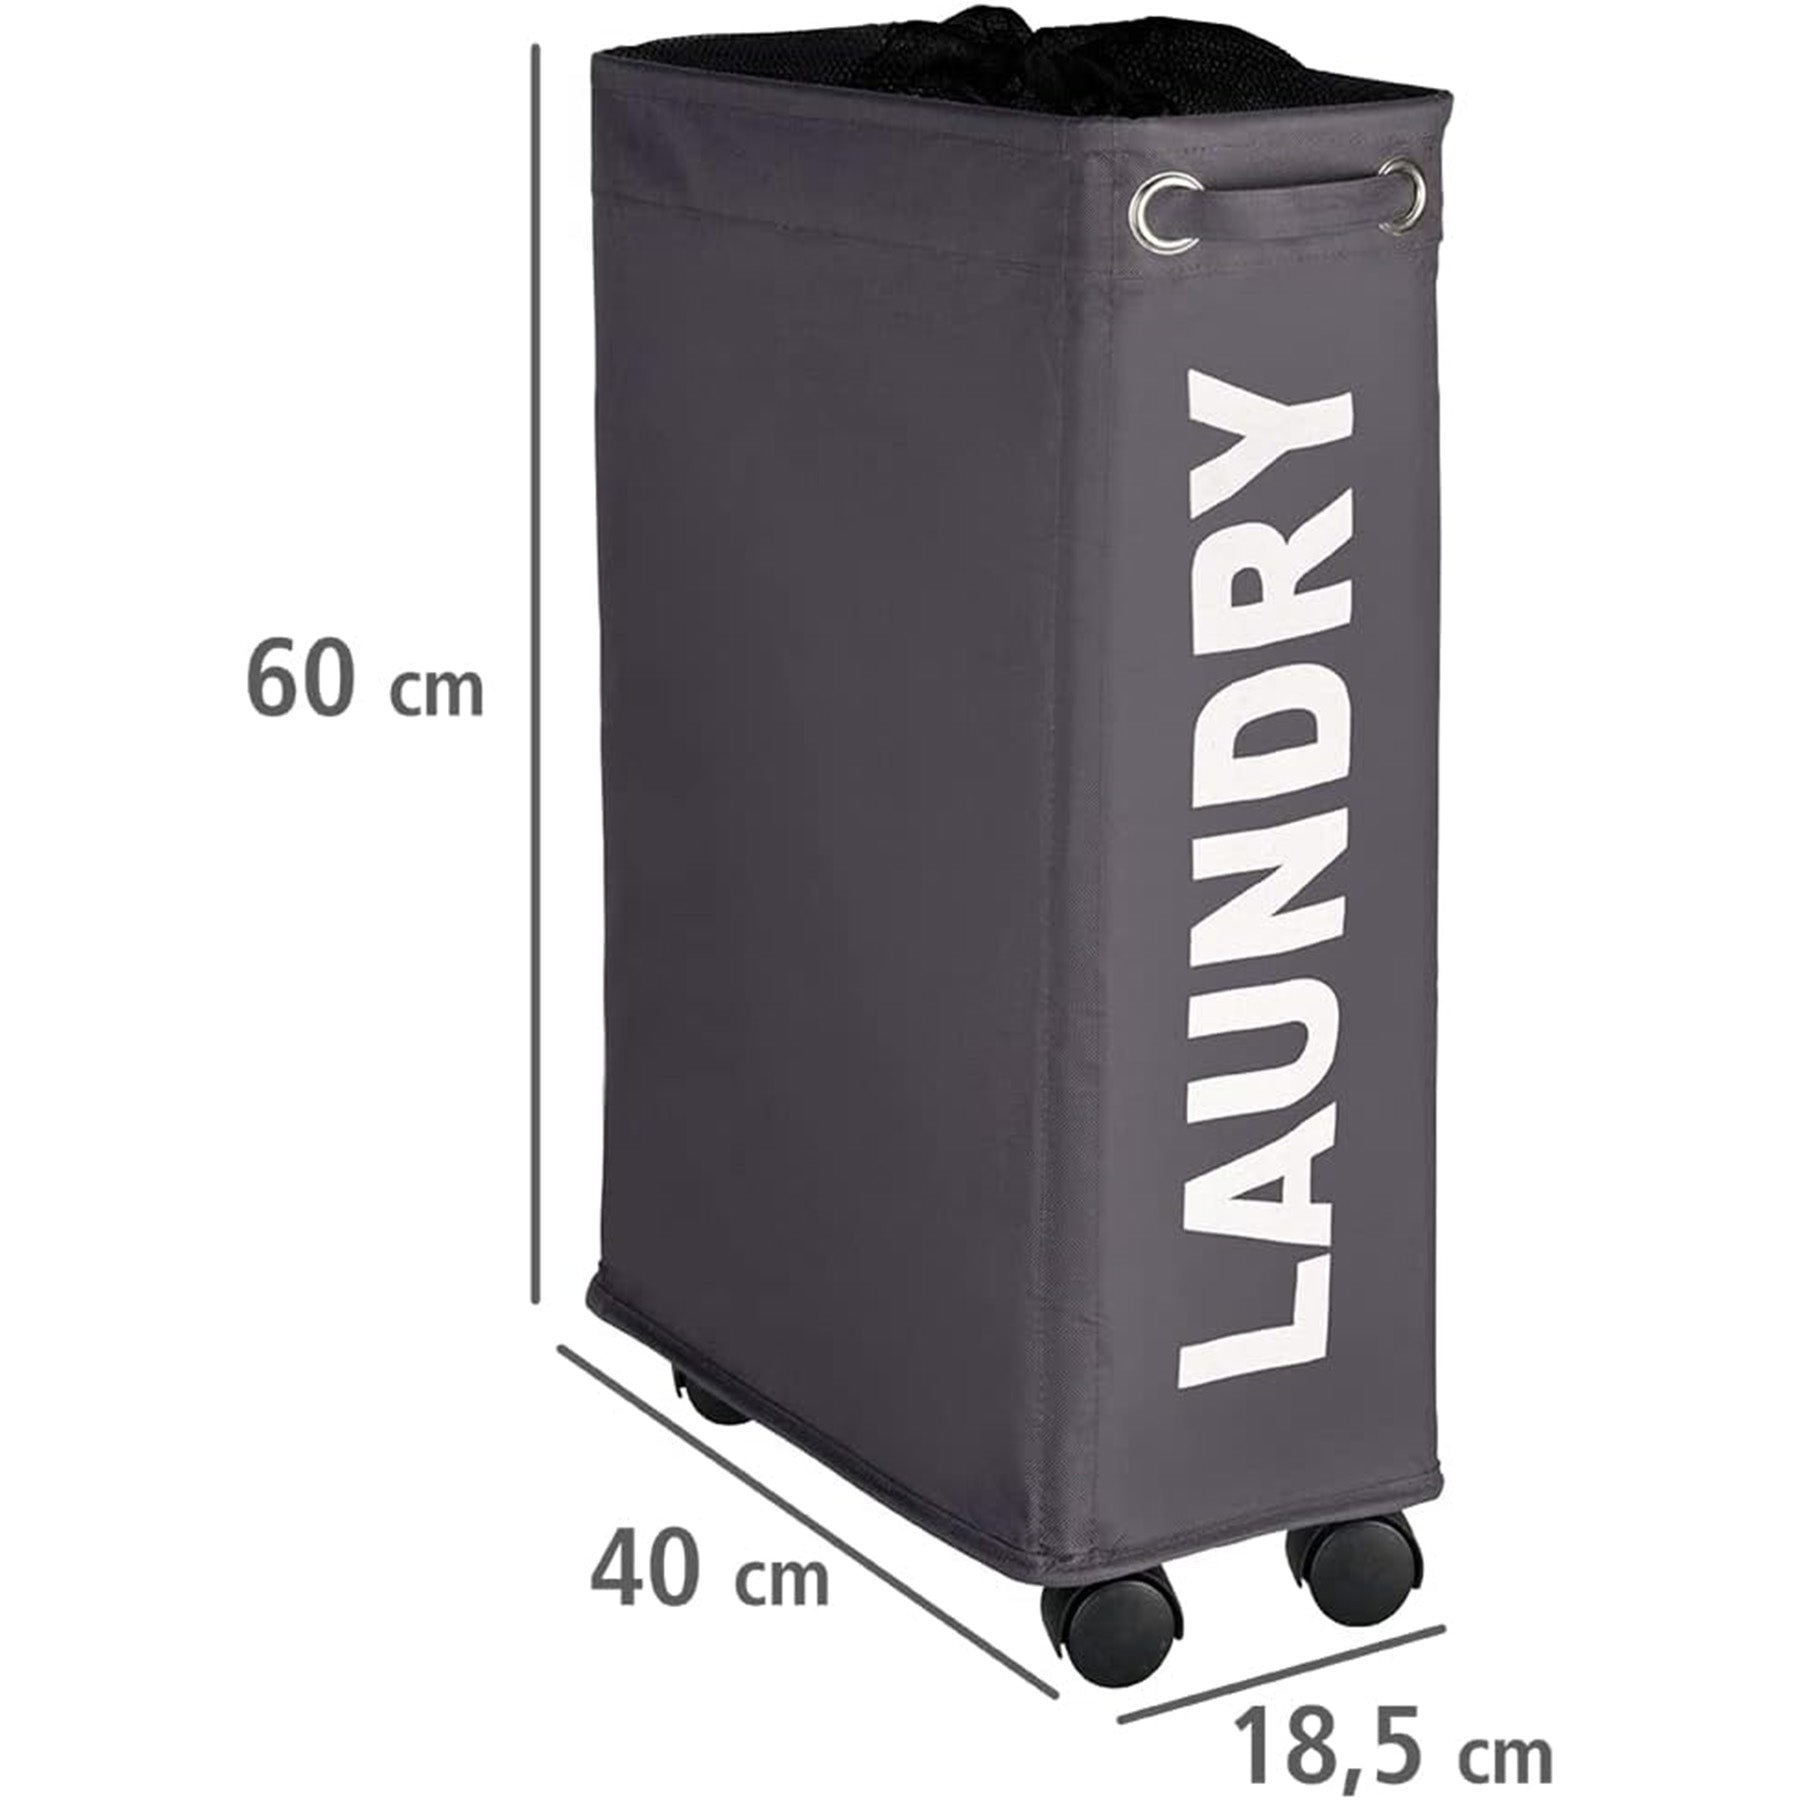 Laundry Bin Corno Grey, Capacity 11.36 gallon